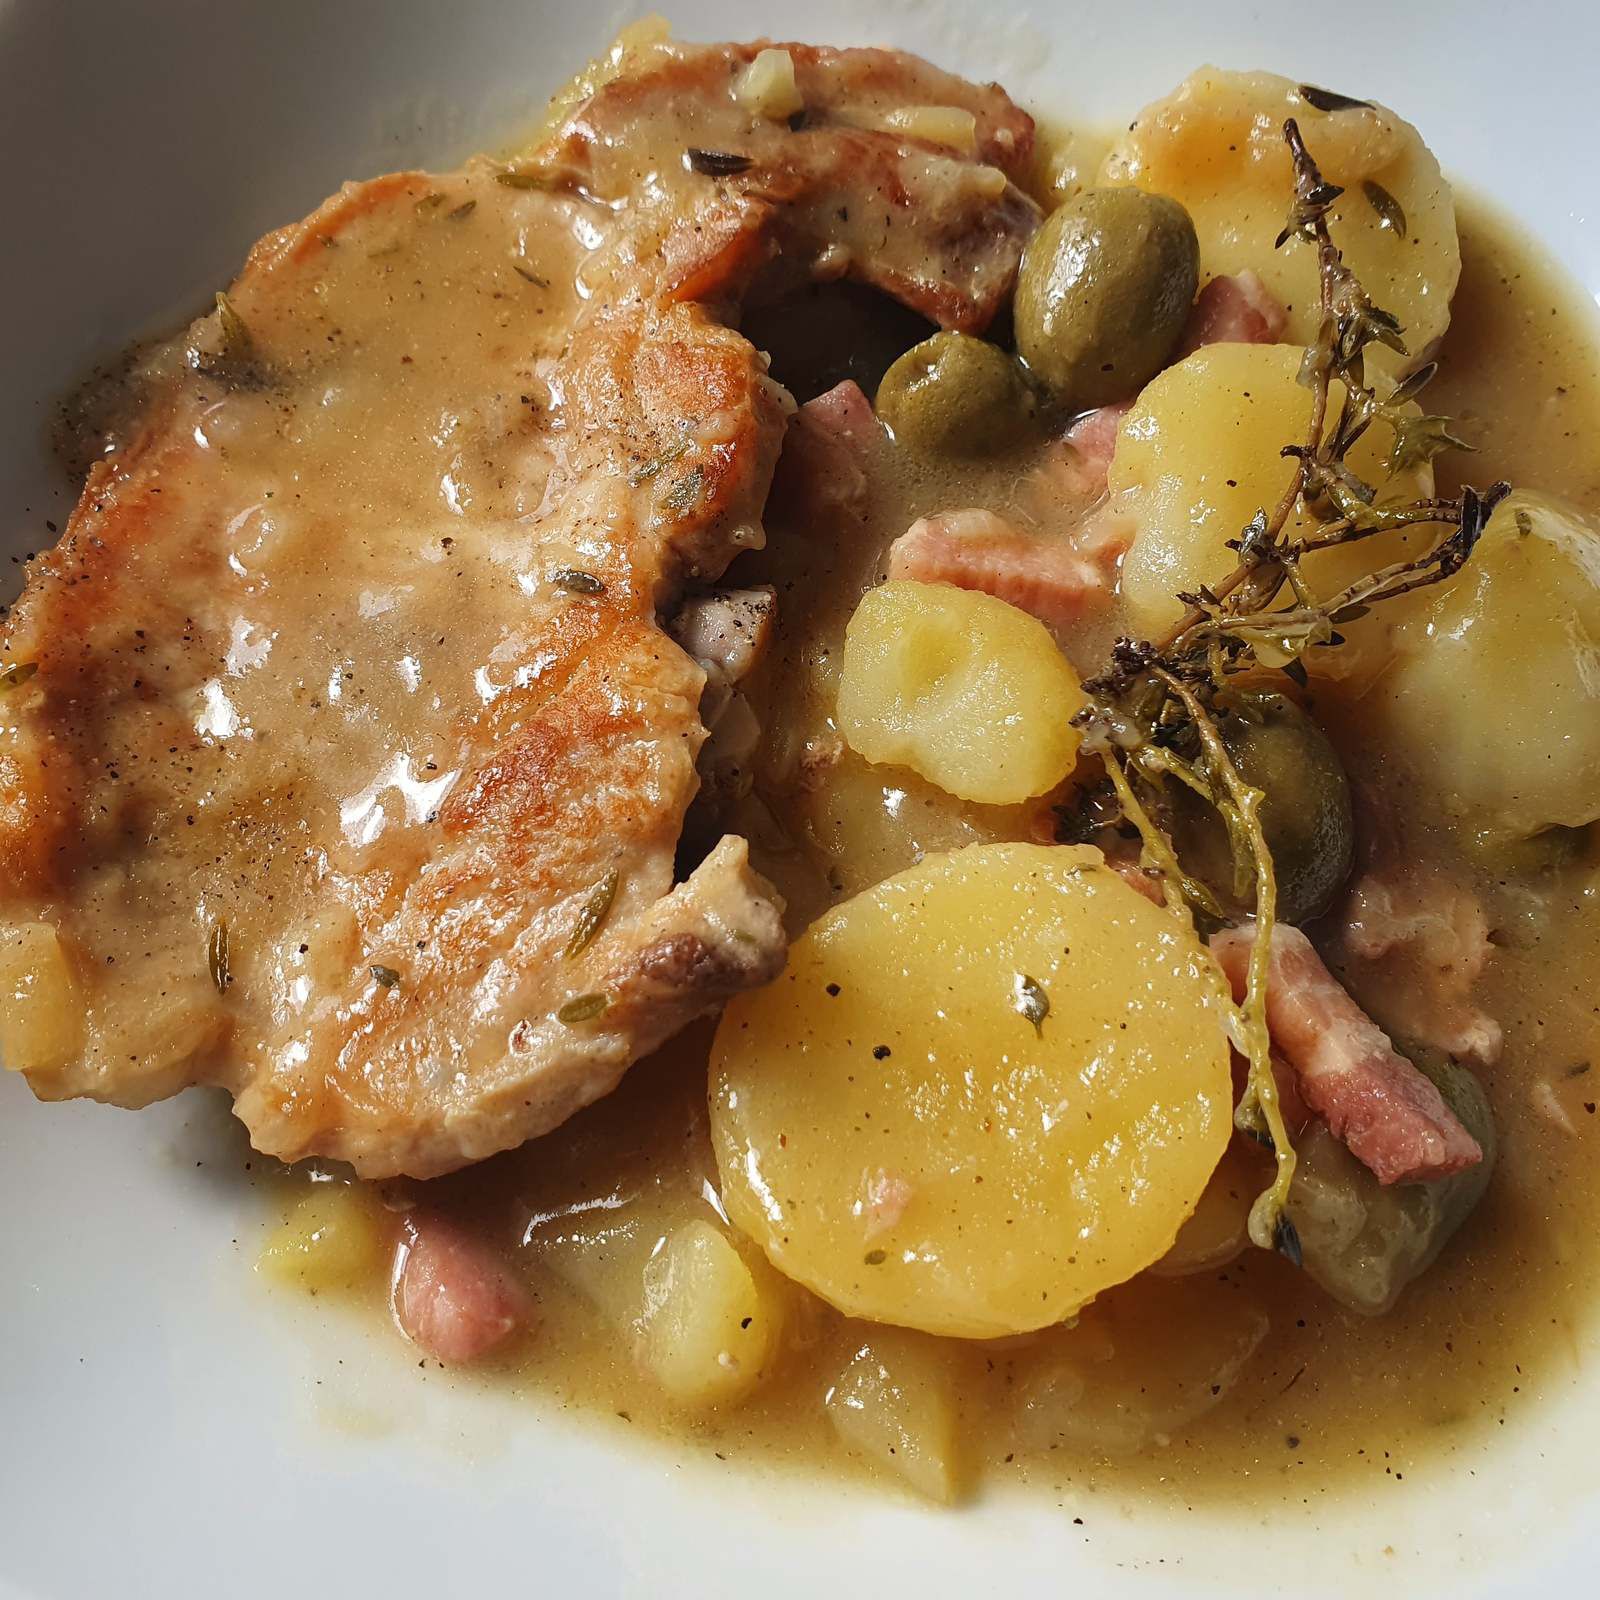 Cotes de porc, pommes de terre, lardons et olives